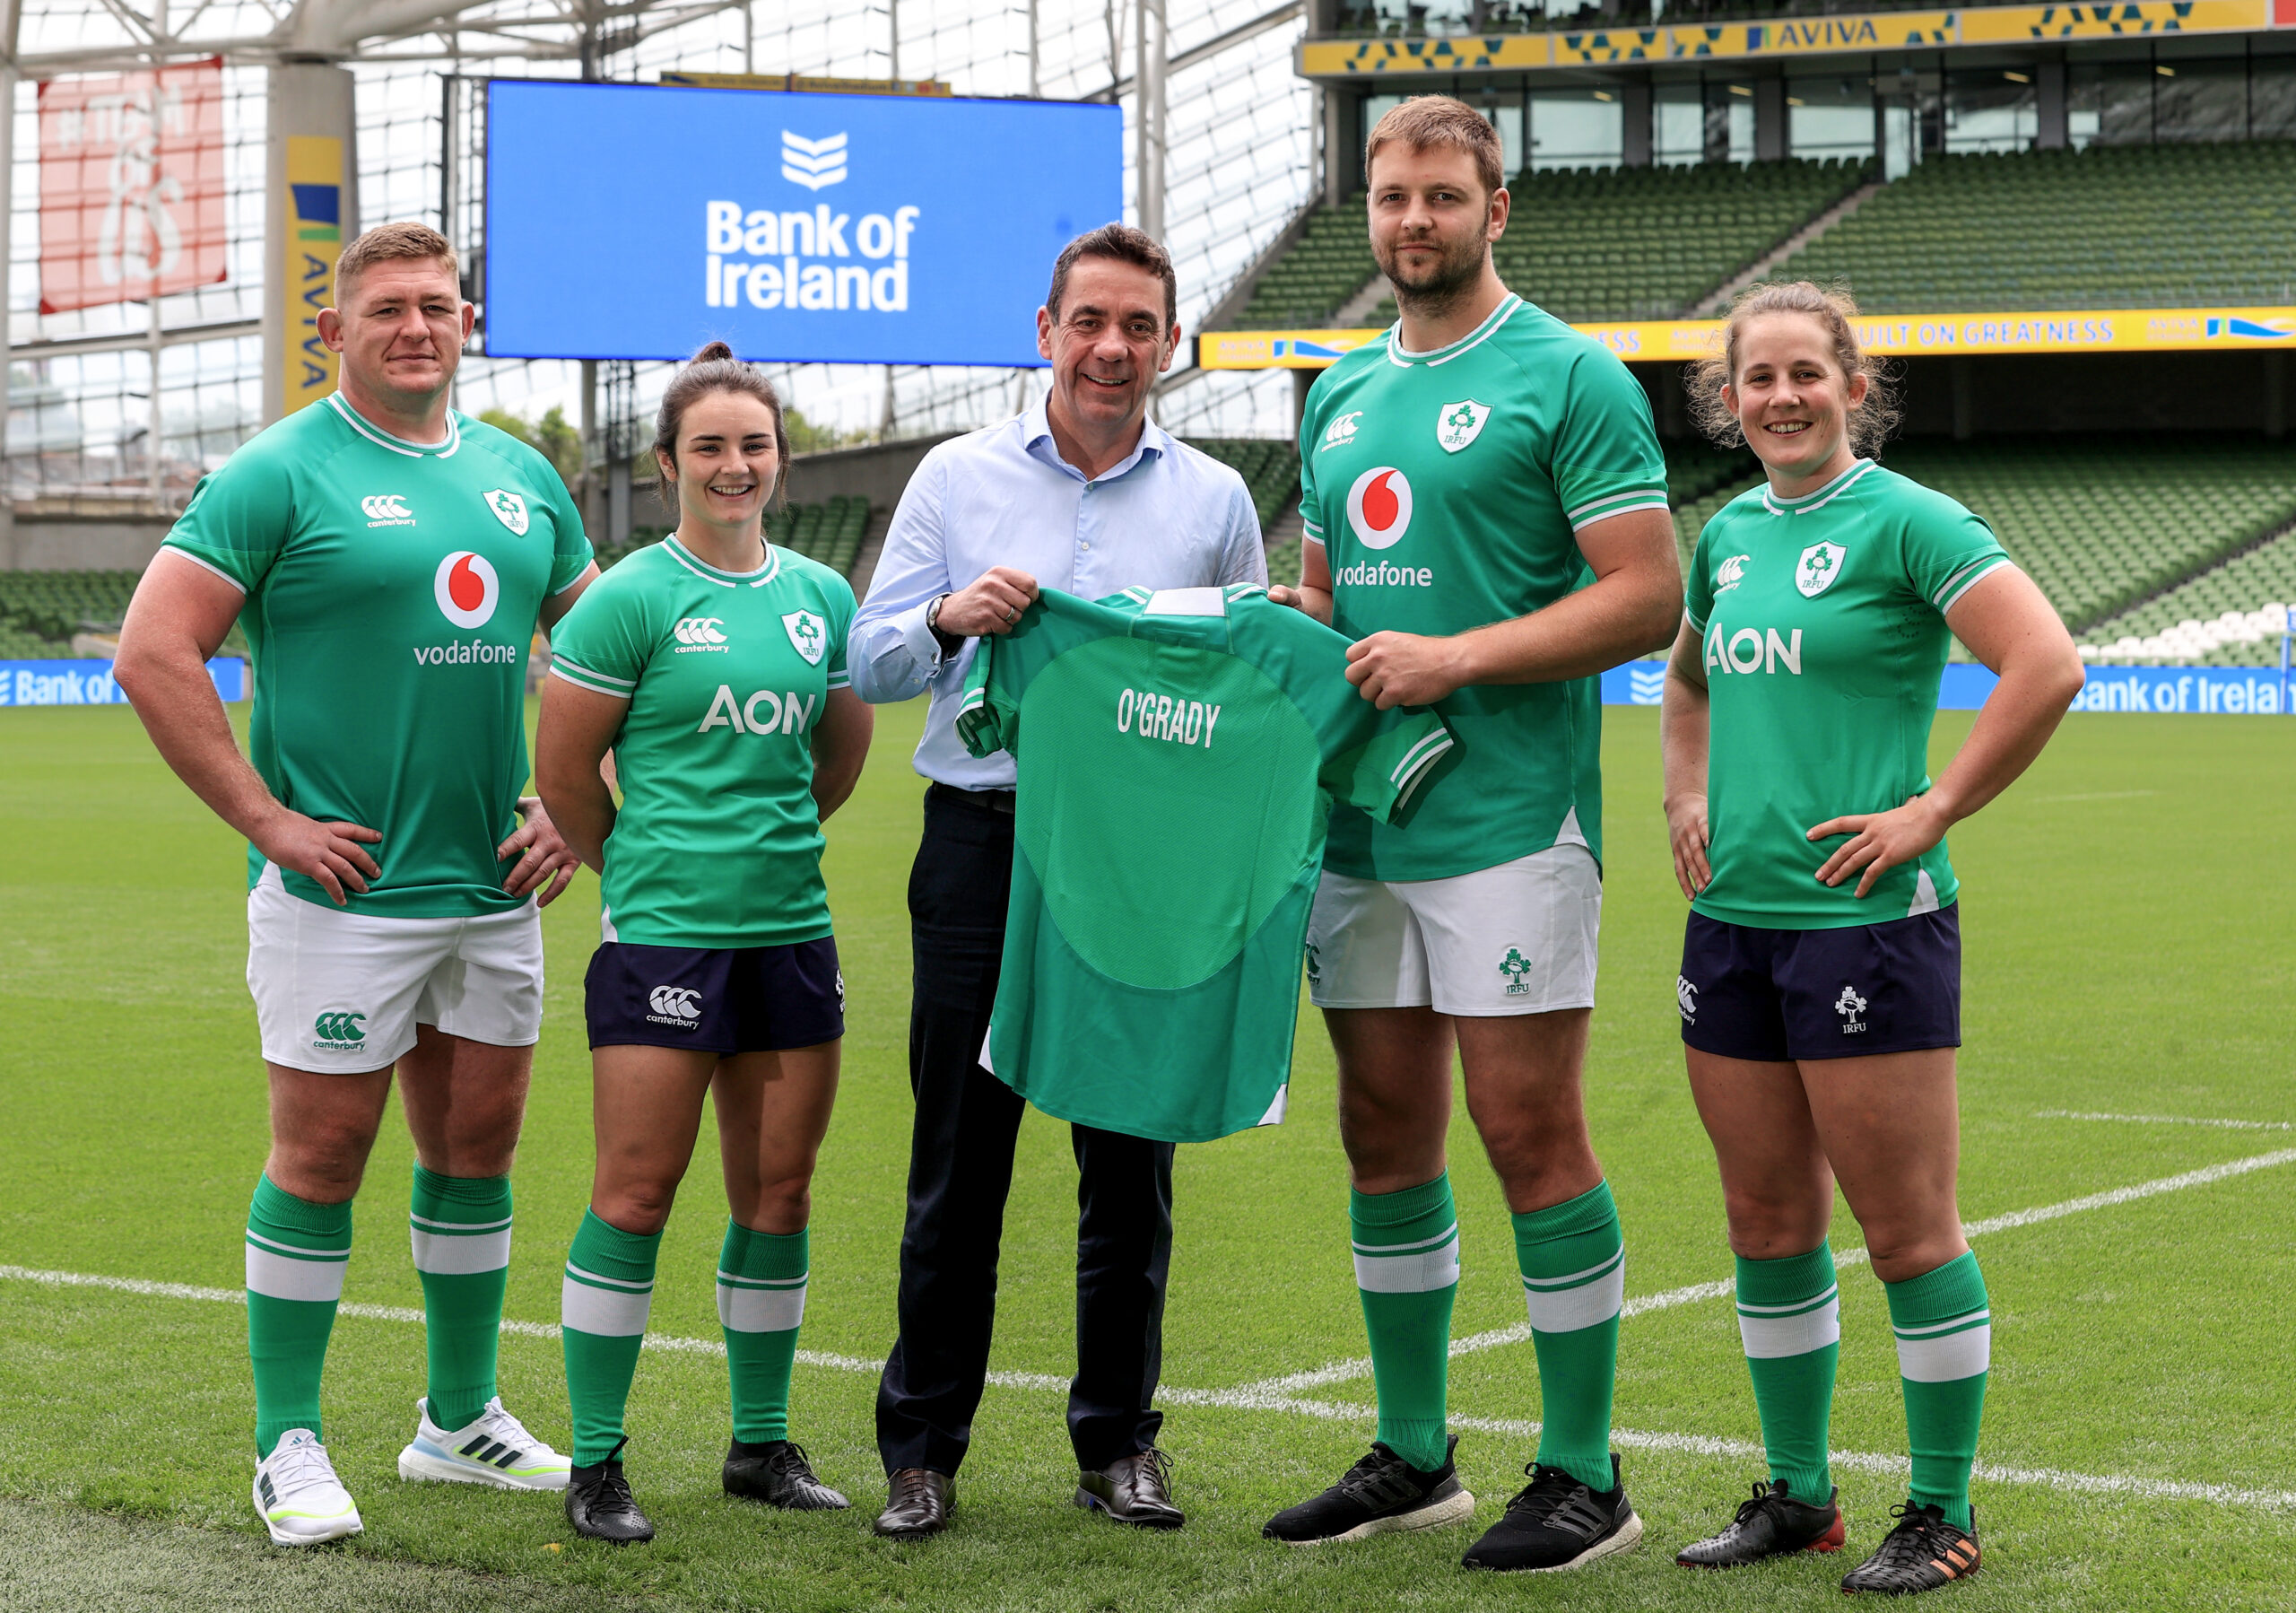 BOI Irish Rugby sponsorship